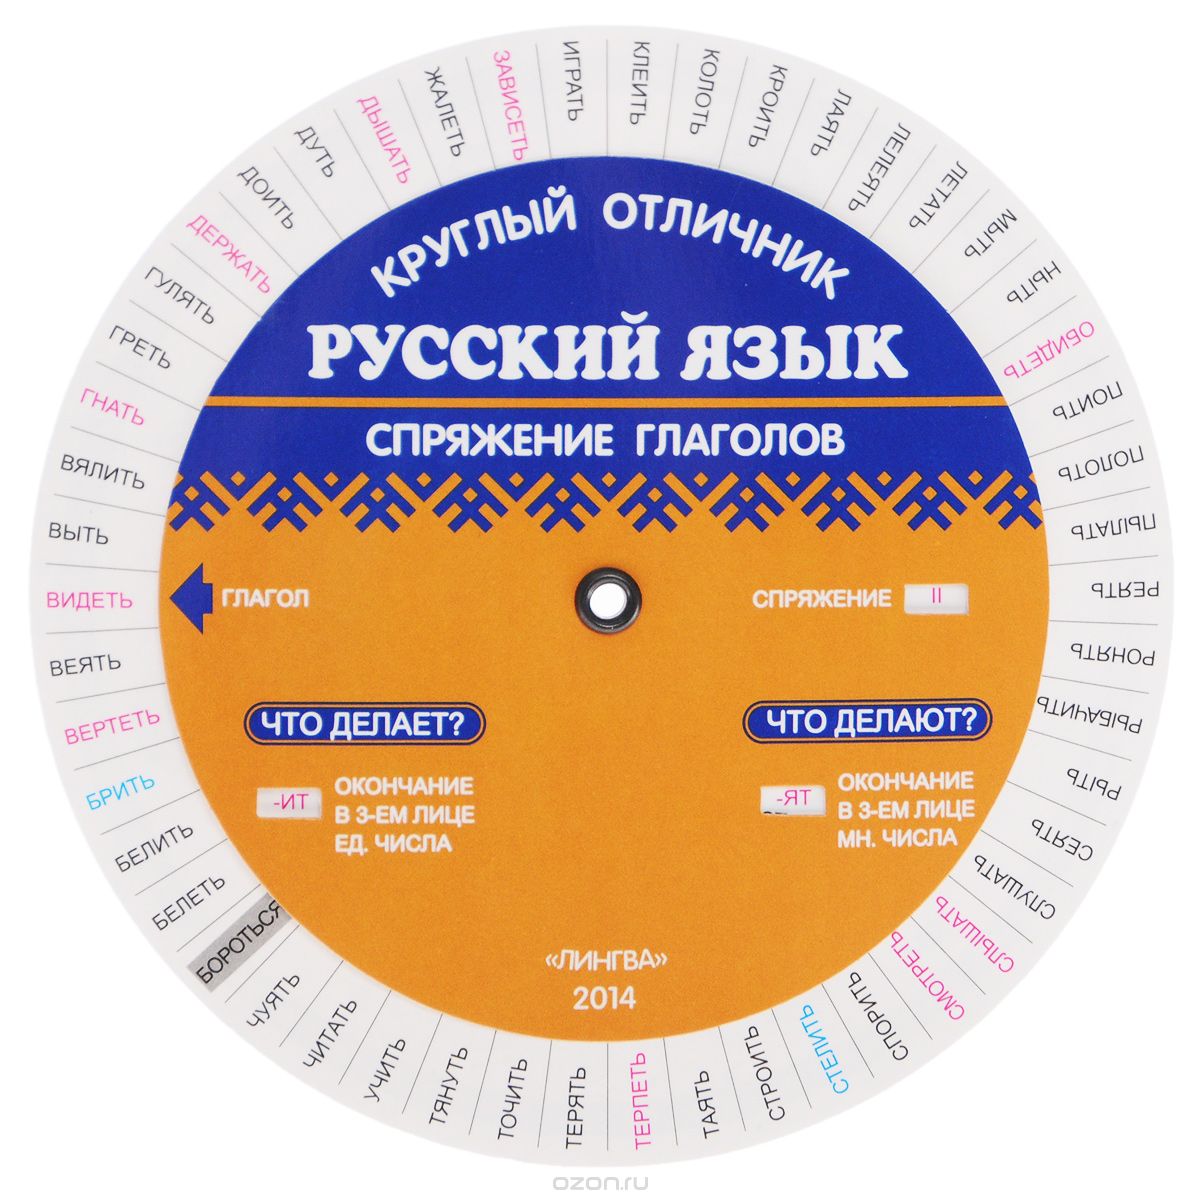 Русский язык. Спряжение глаголов. Таблица